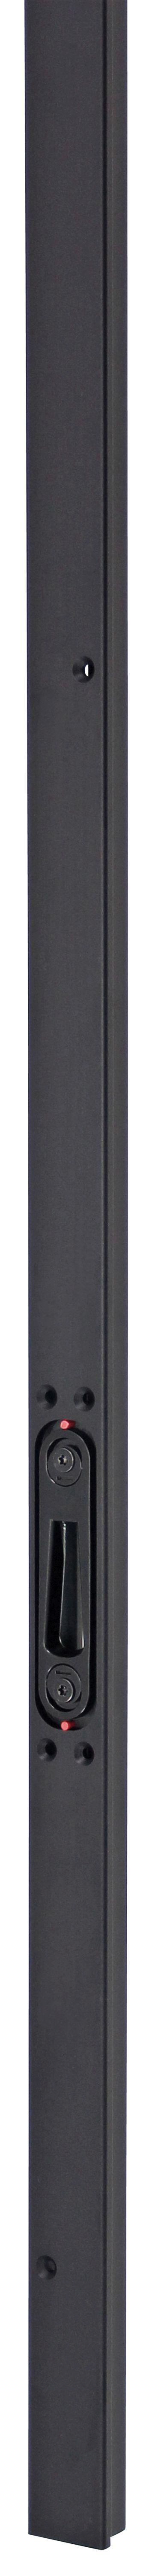 Multipoint Deluxe Inbouw Noir (Serie 004, 006, 51 en 52) | SKG3 Deurnaald | Deurhoogte 1950-2300 mm